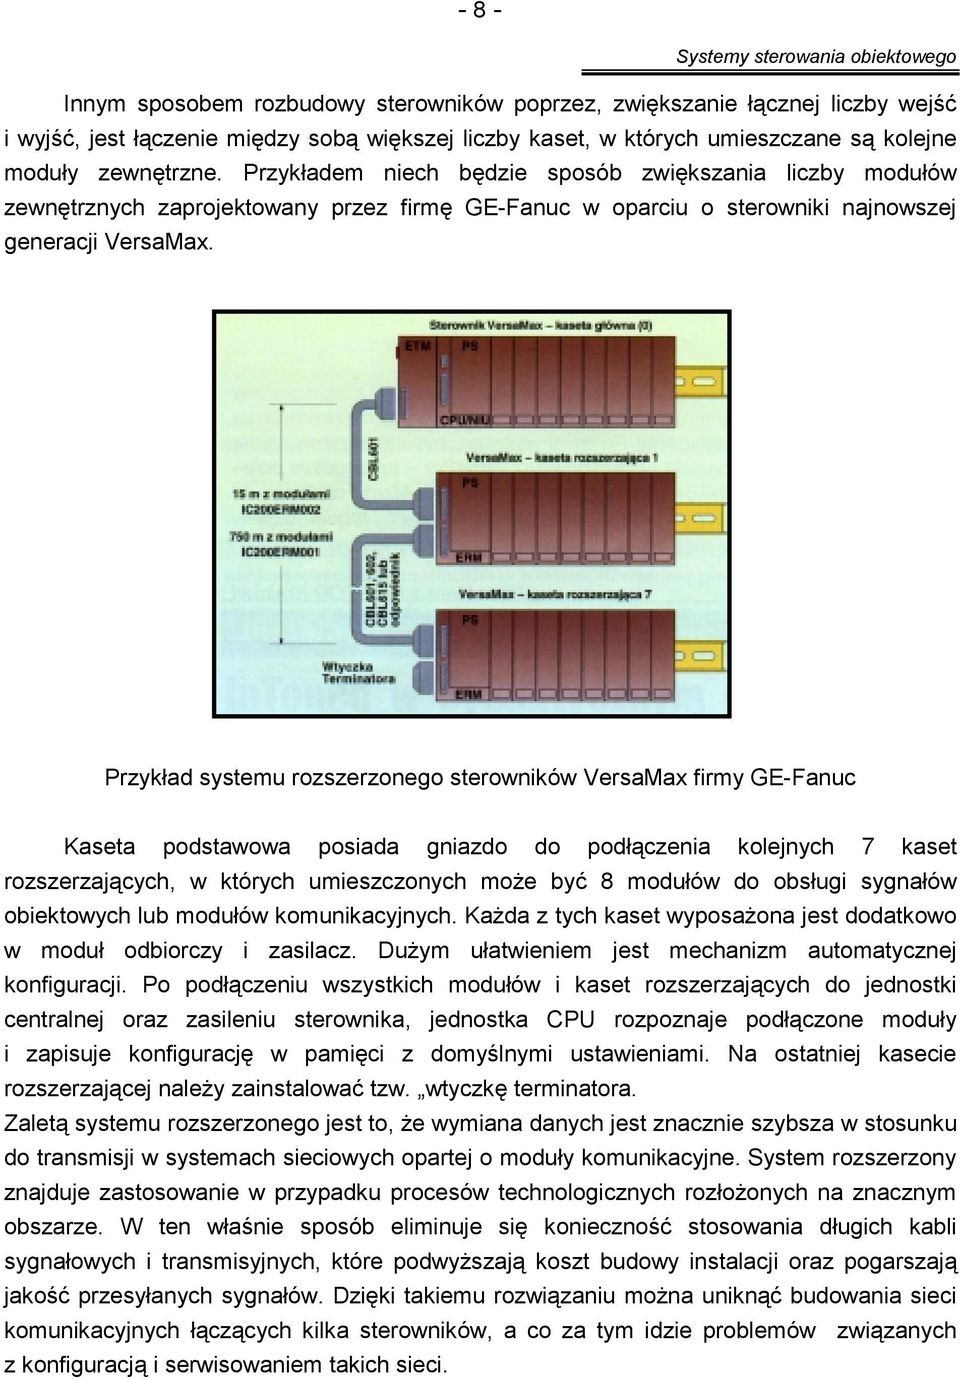 Przykład systemu rozszerzonego sterowników VersaMax firmy GE-Fanuc Kaseta podstawowa posiada gniazdo do podłączenia kolejnych 7 kaset rozszerzających, w których umieszczonych może być 8 modułów do